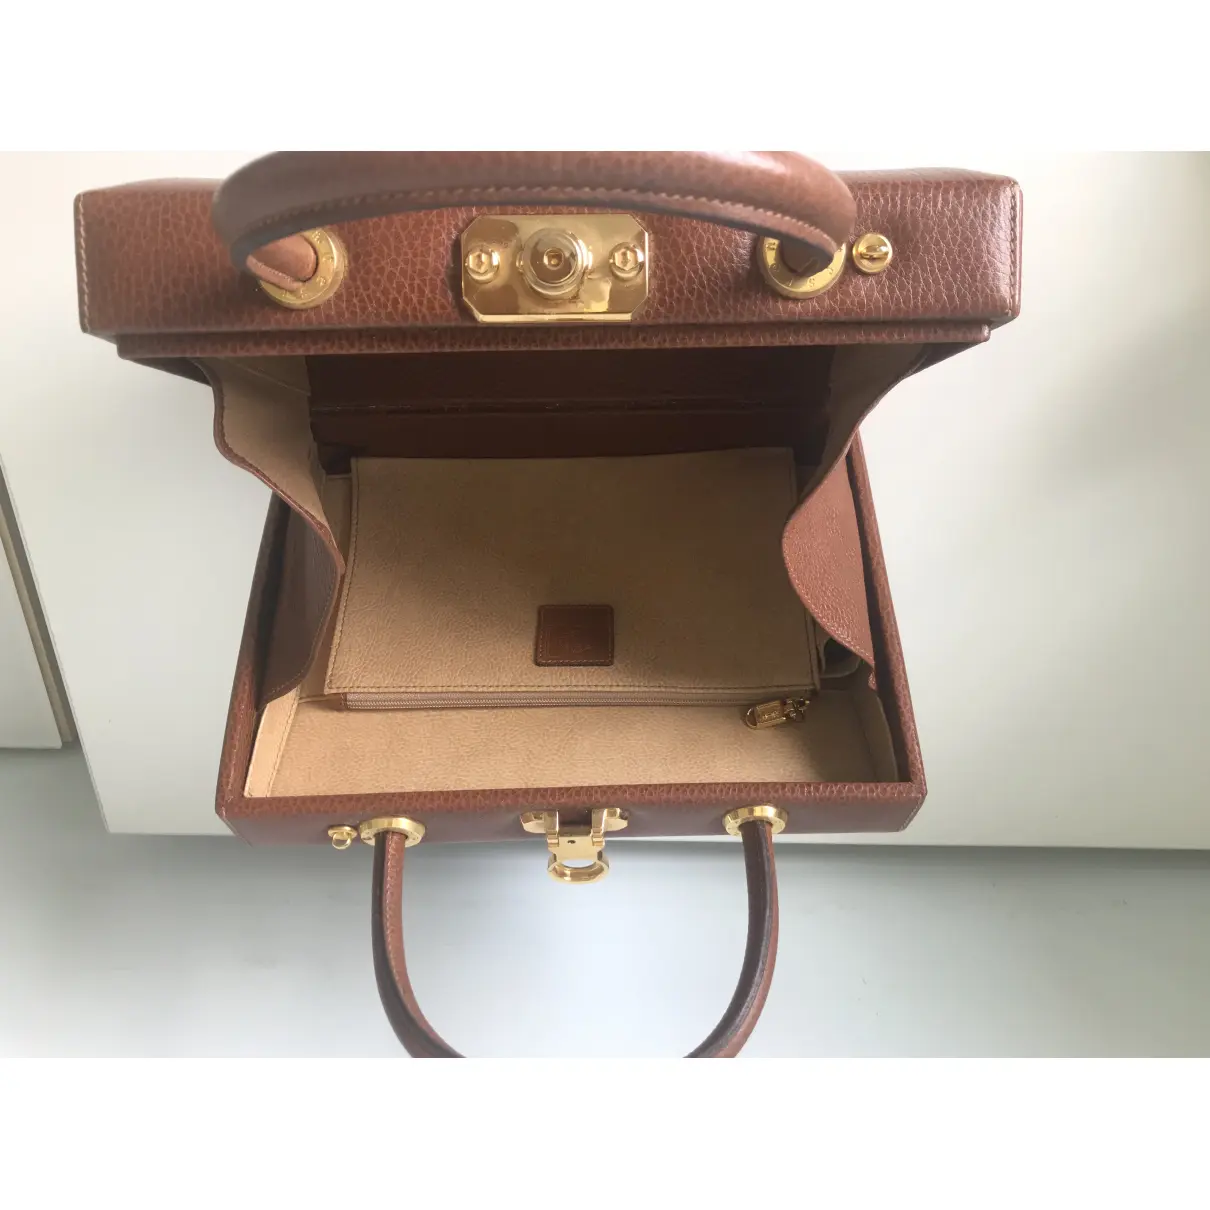 Leather handbag A. Testoni - Vintage